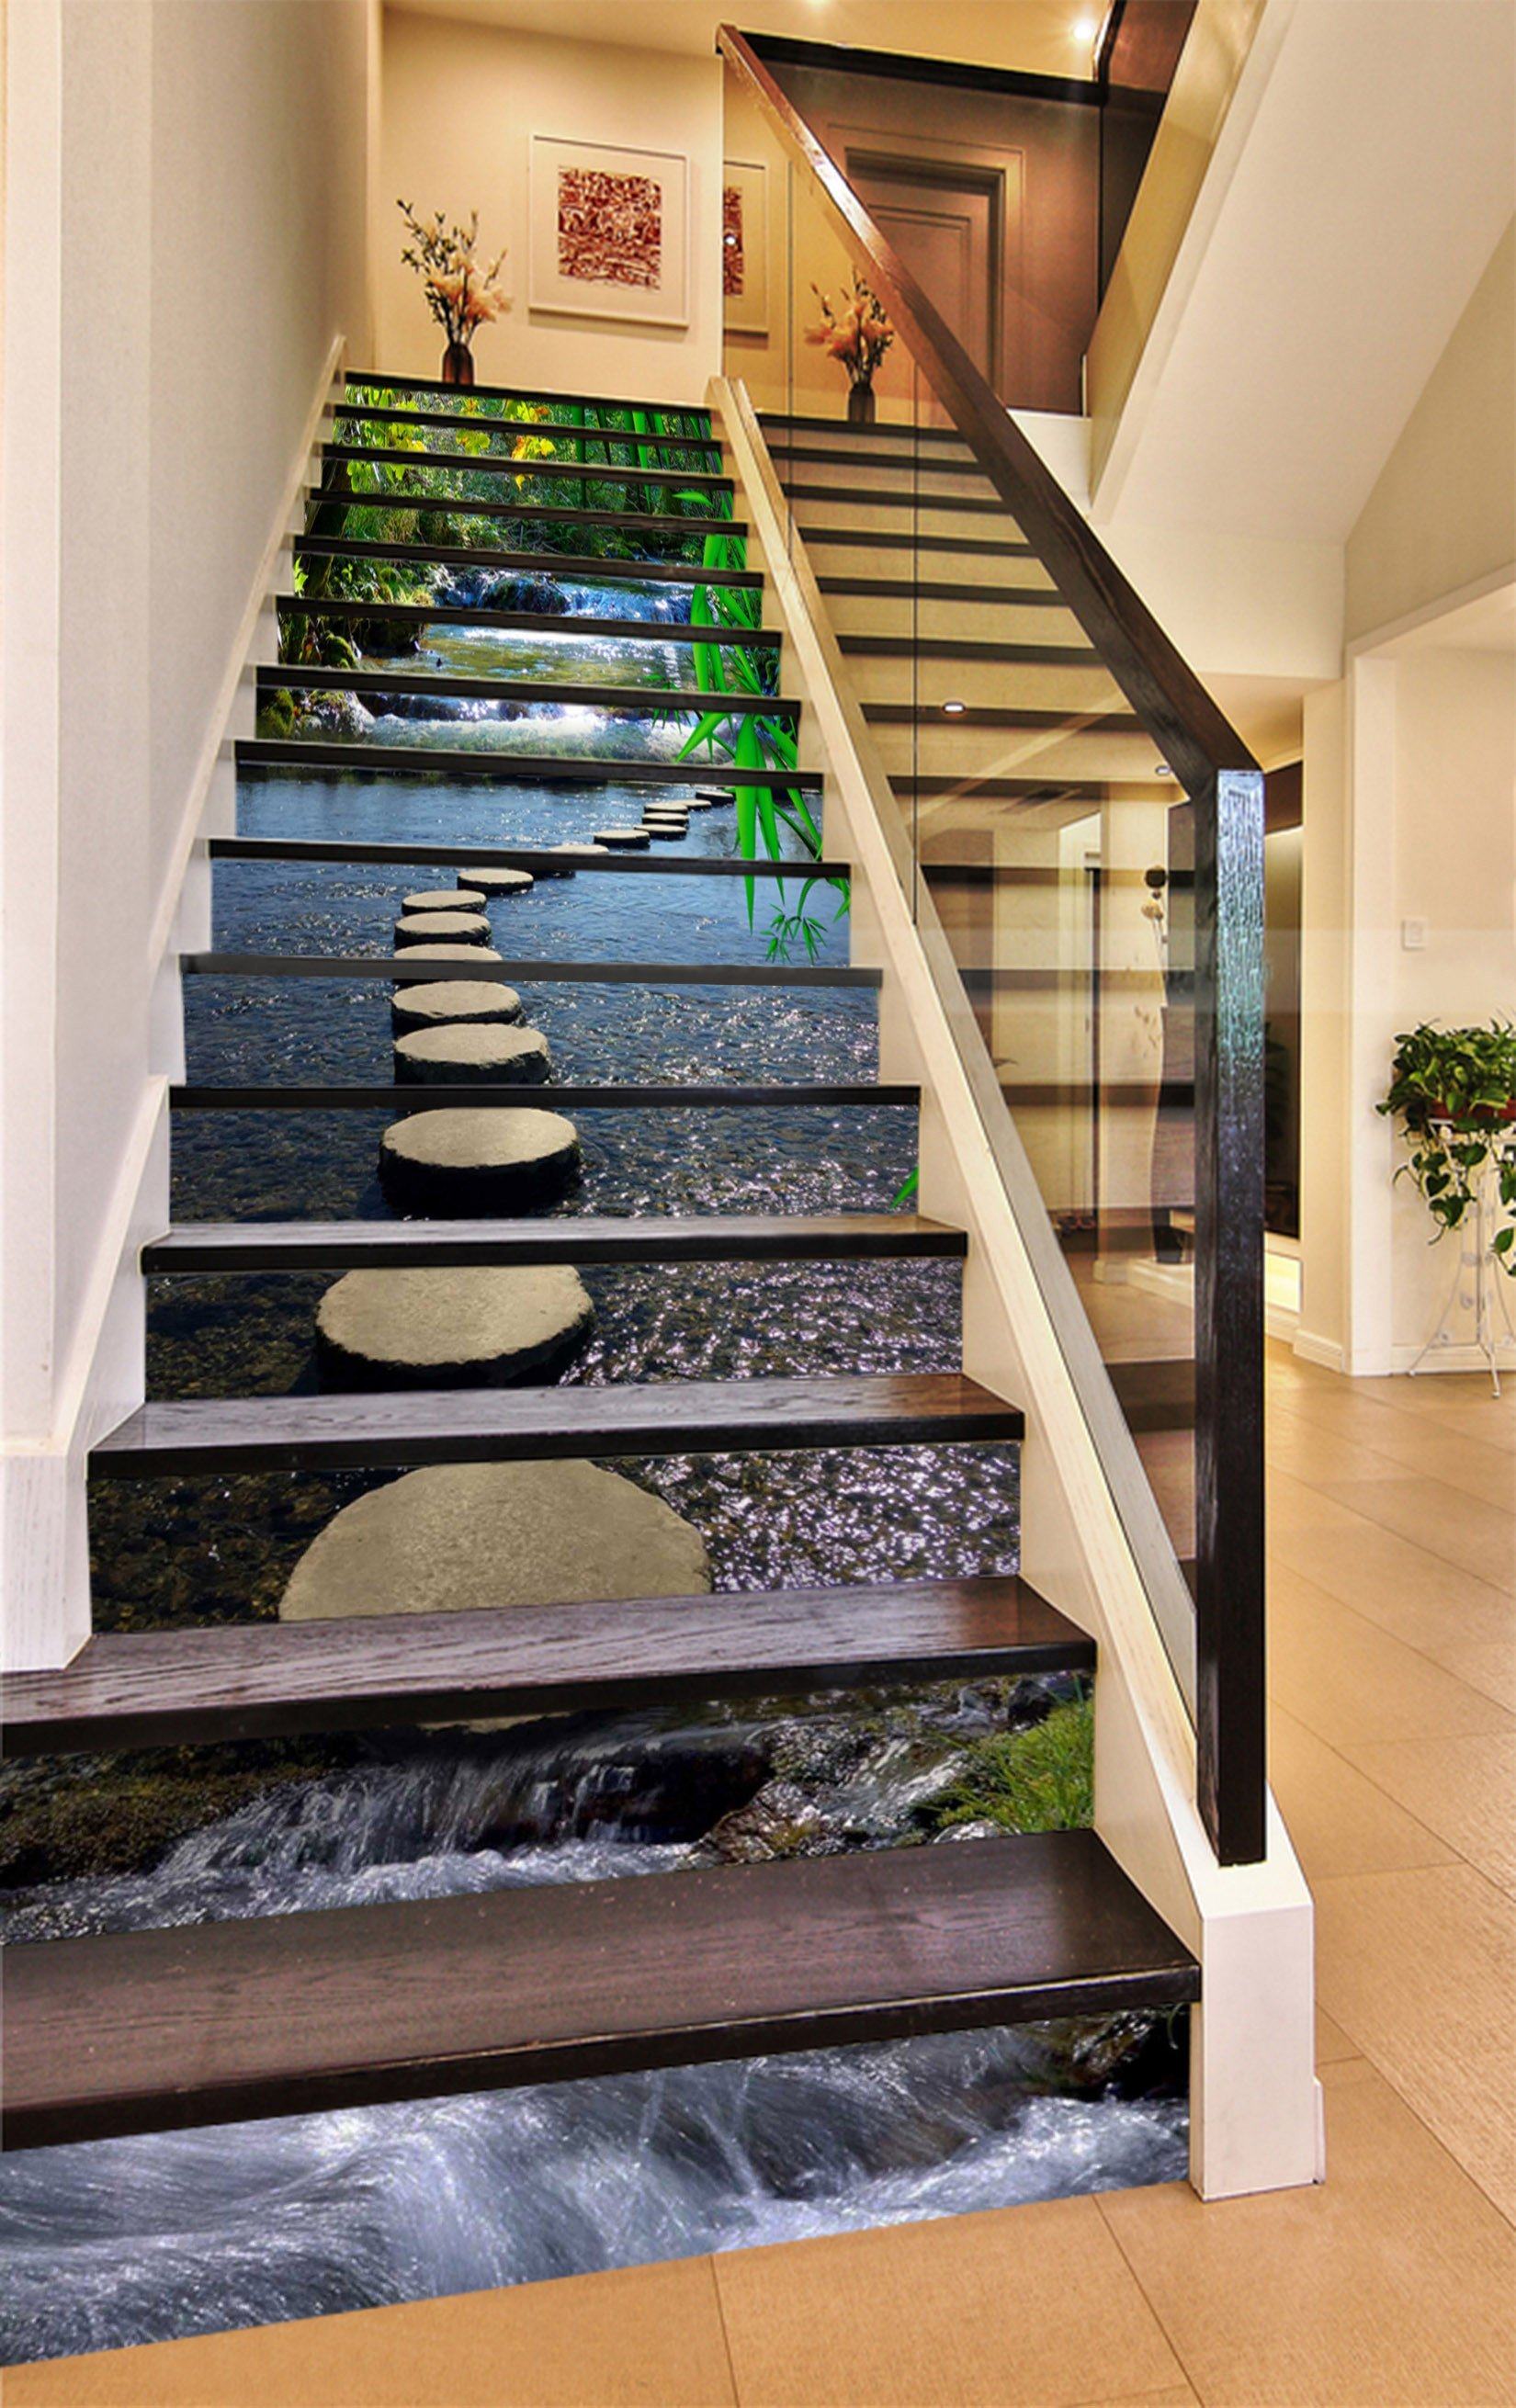 3D River Stones Road 1487 Stair Risers Wallpaper AJ Wallpaper 